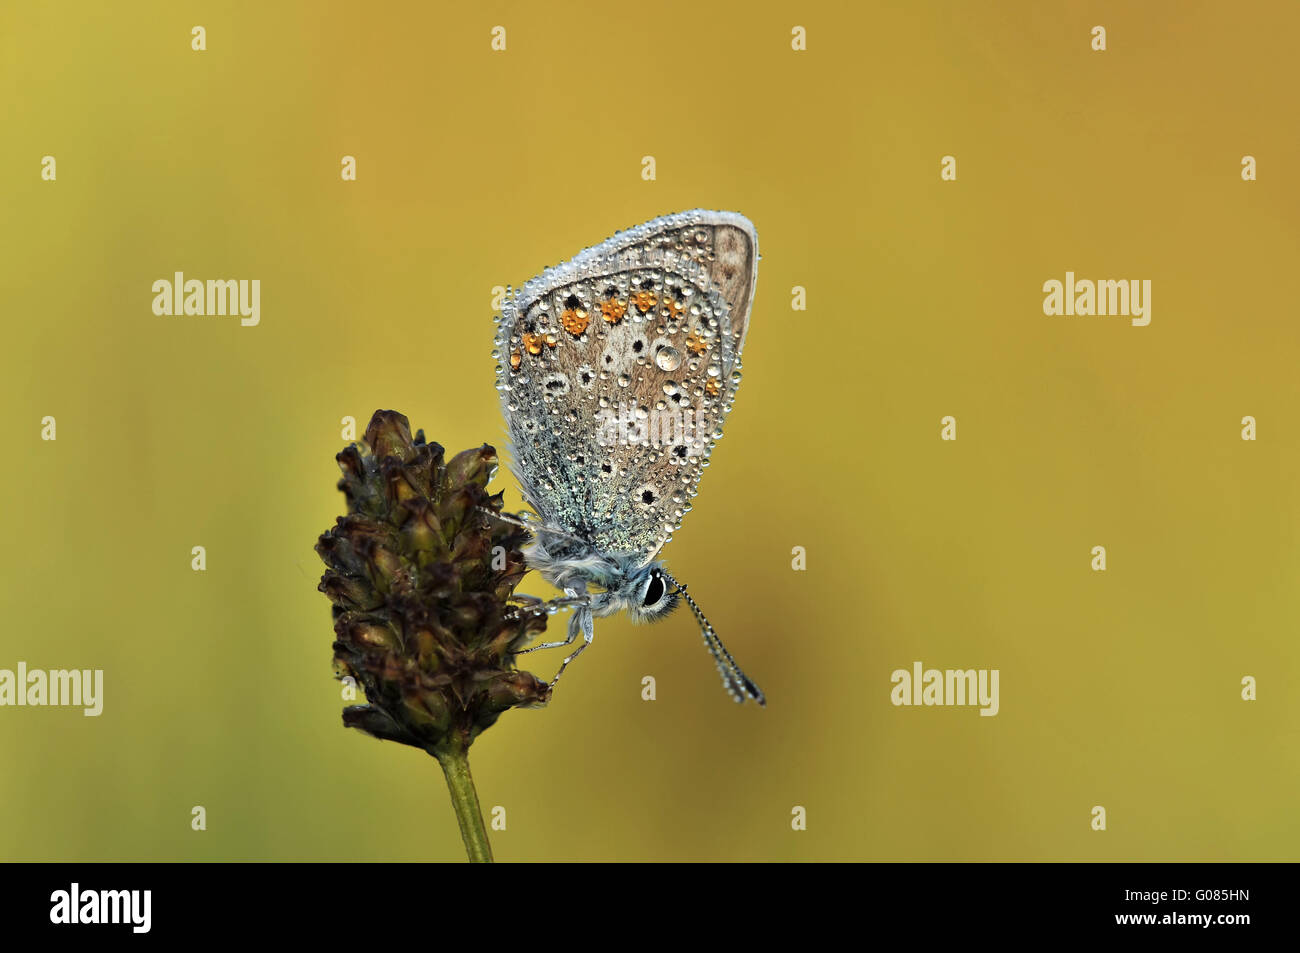 Gossamer-winged butterfly Foto Stock